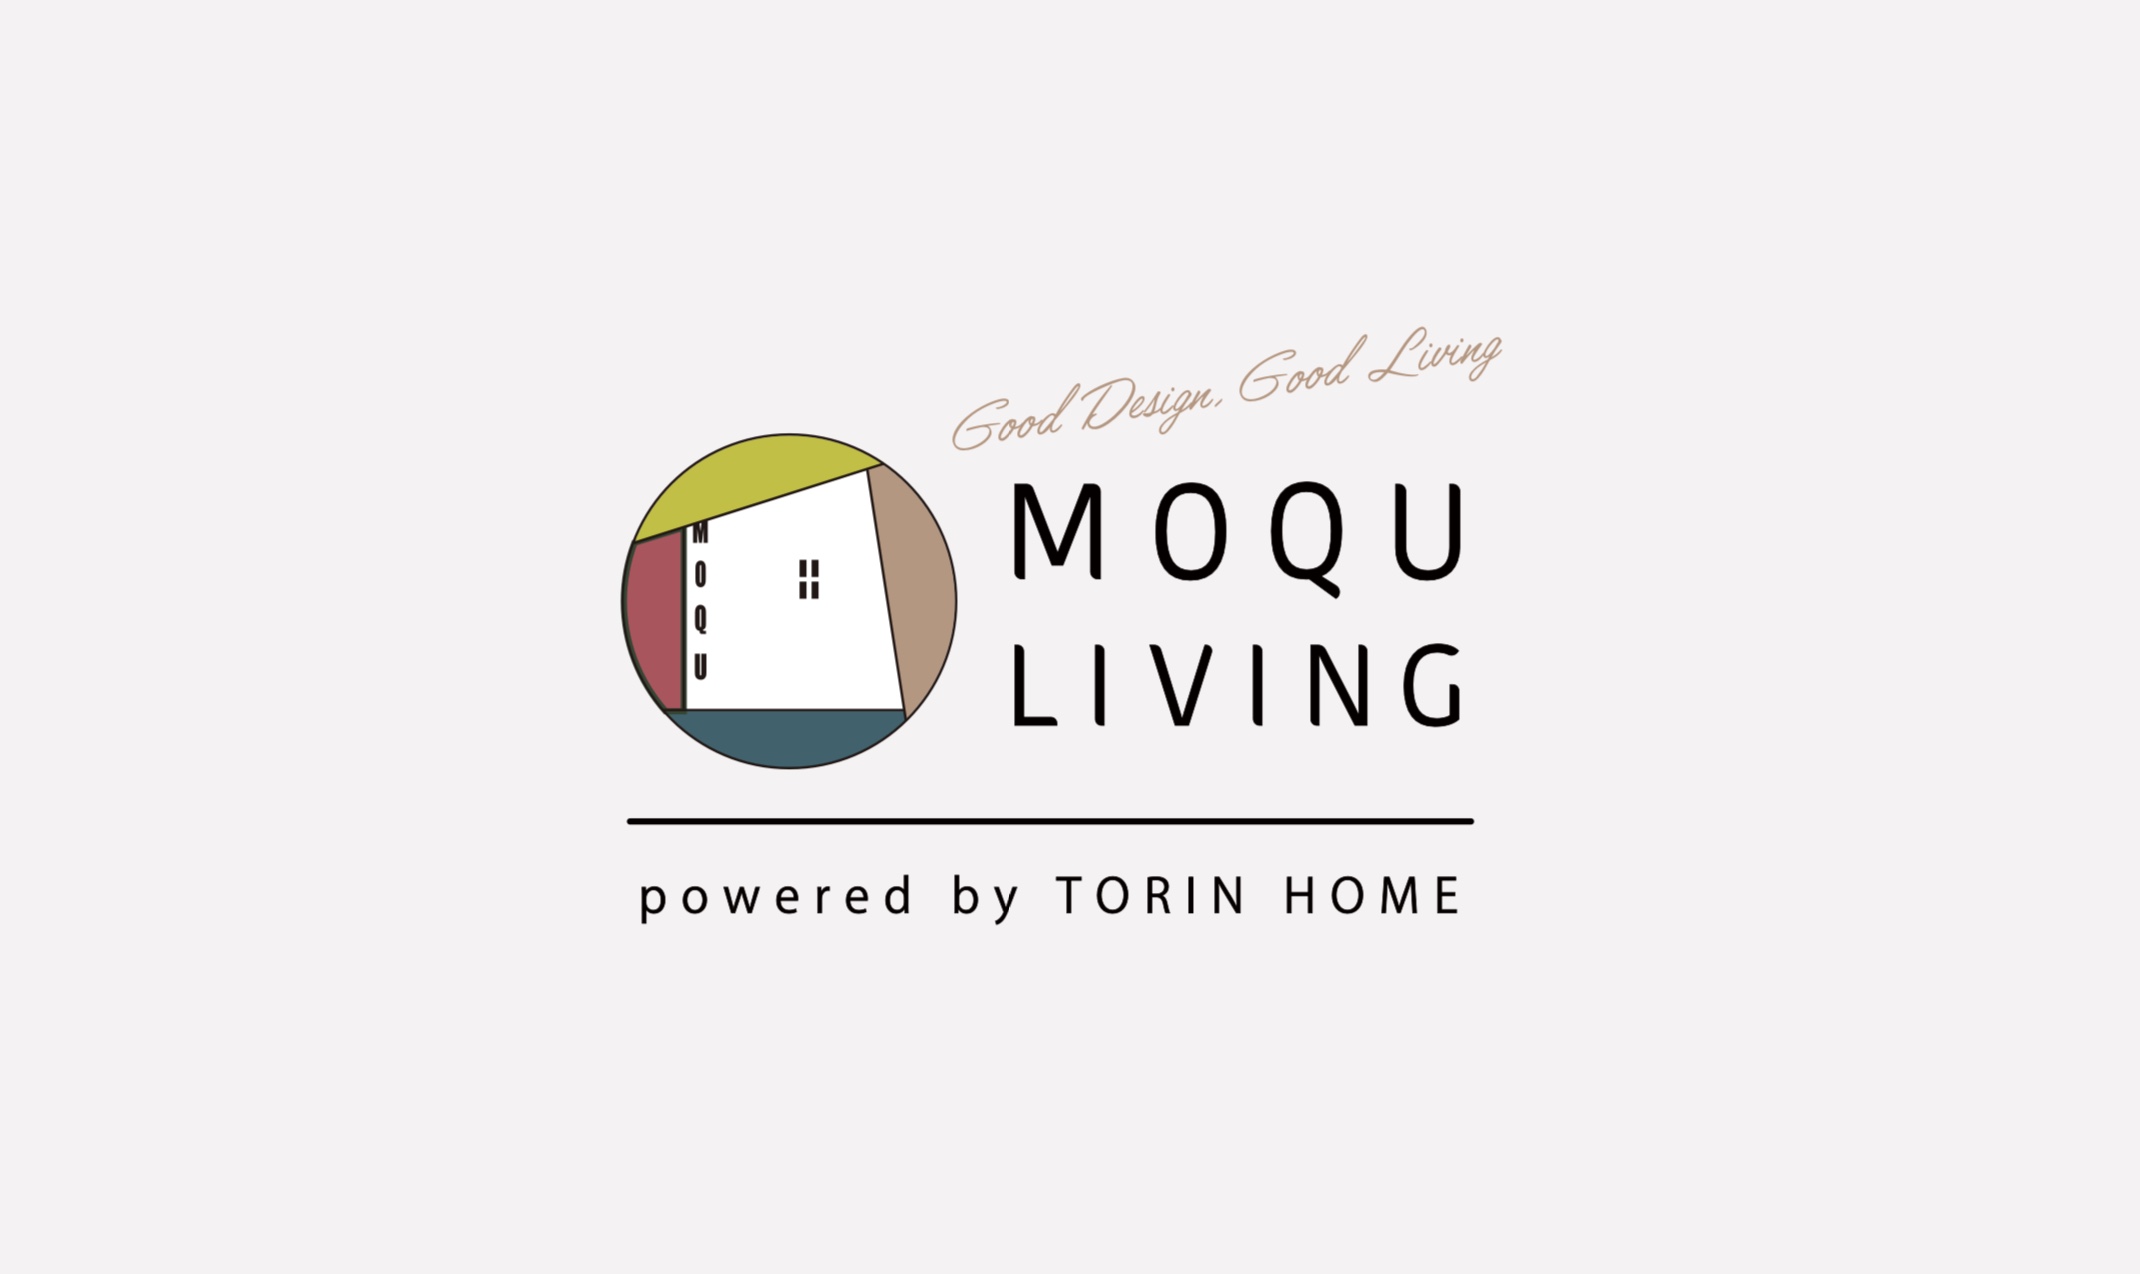 MOQU LIVINGのこと アイキャッチ画像